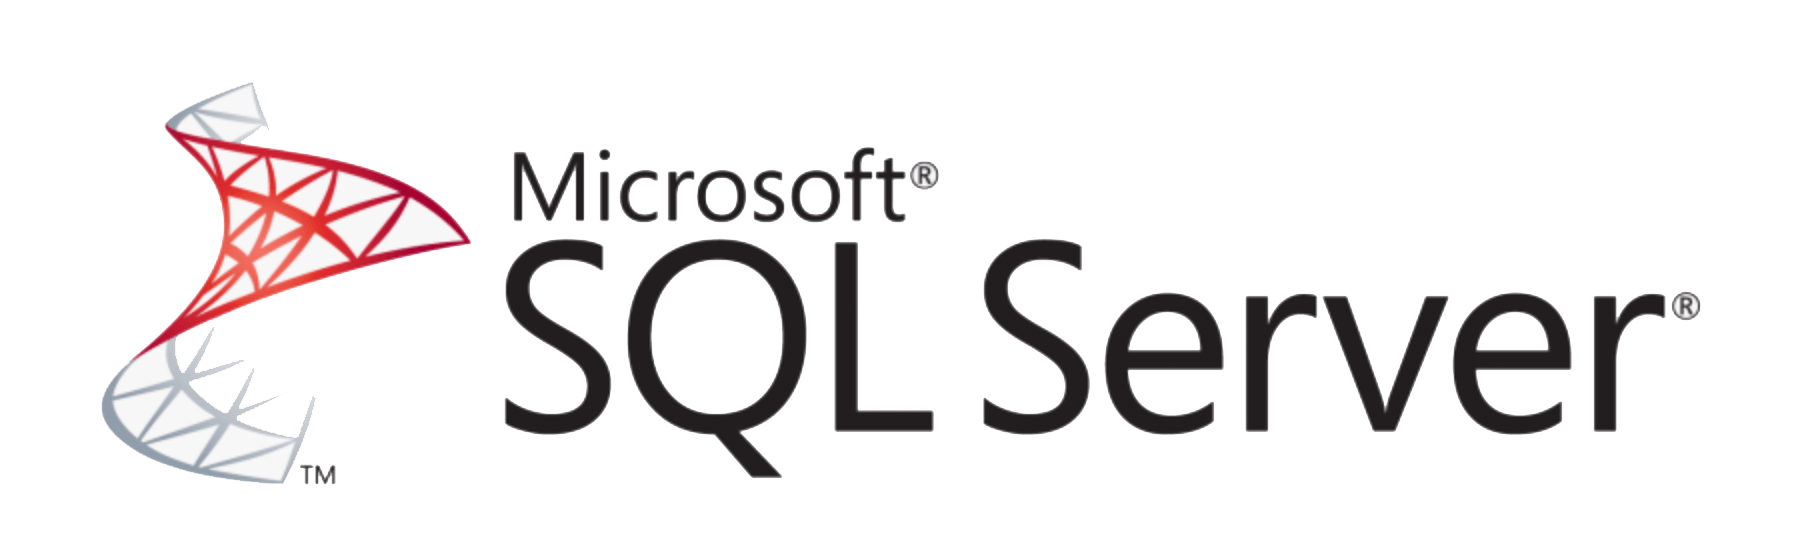 Logo de SQL Server